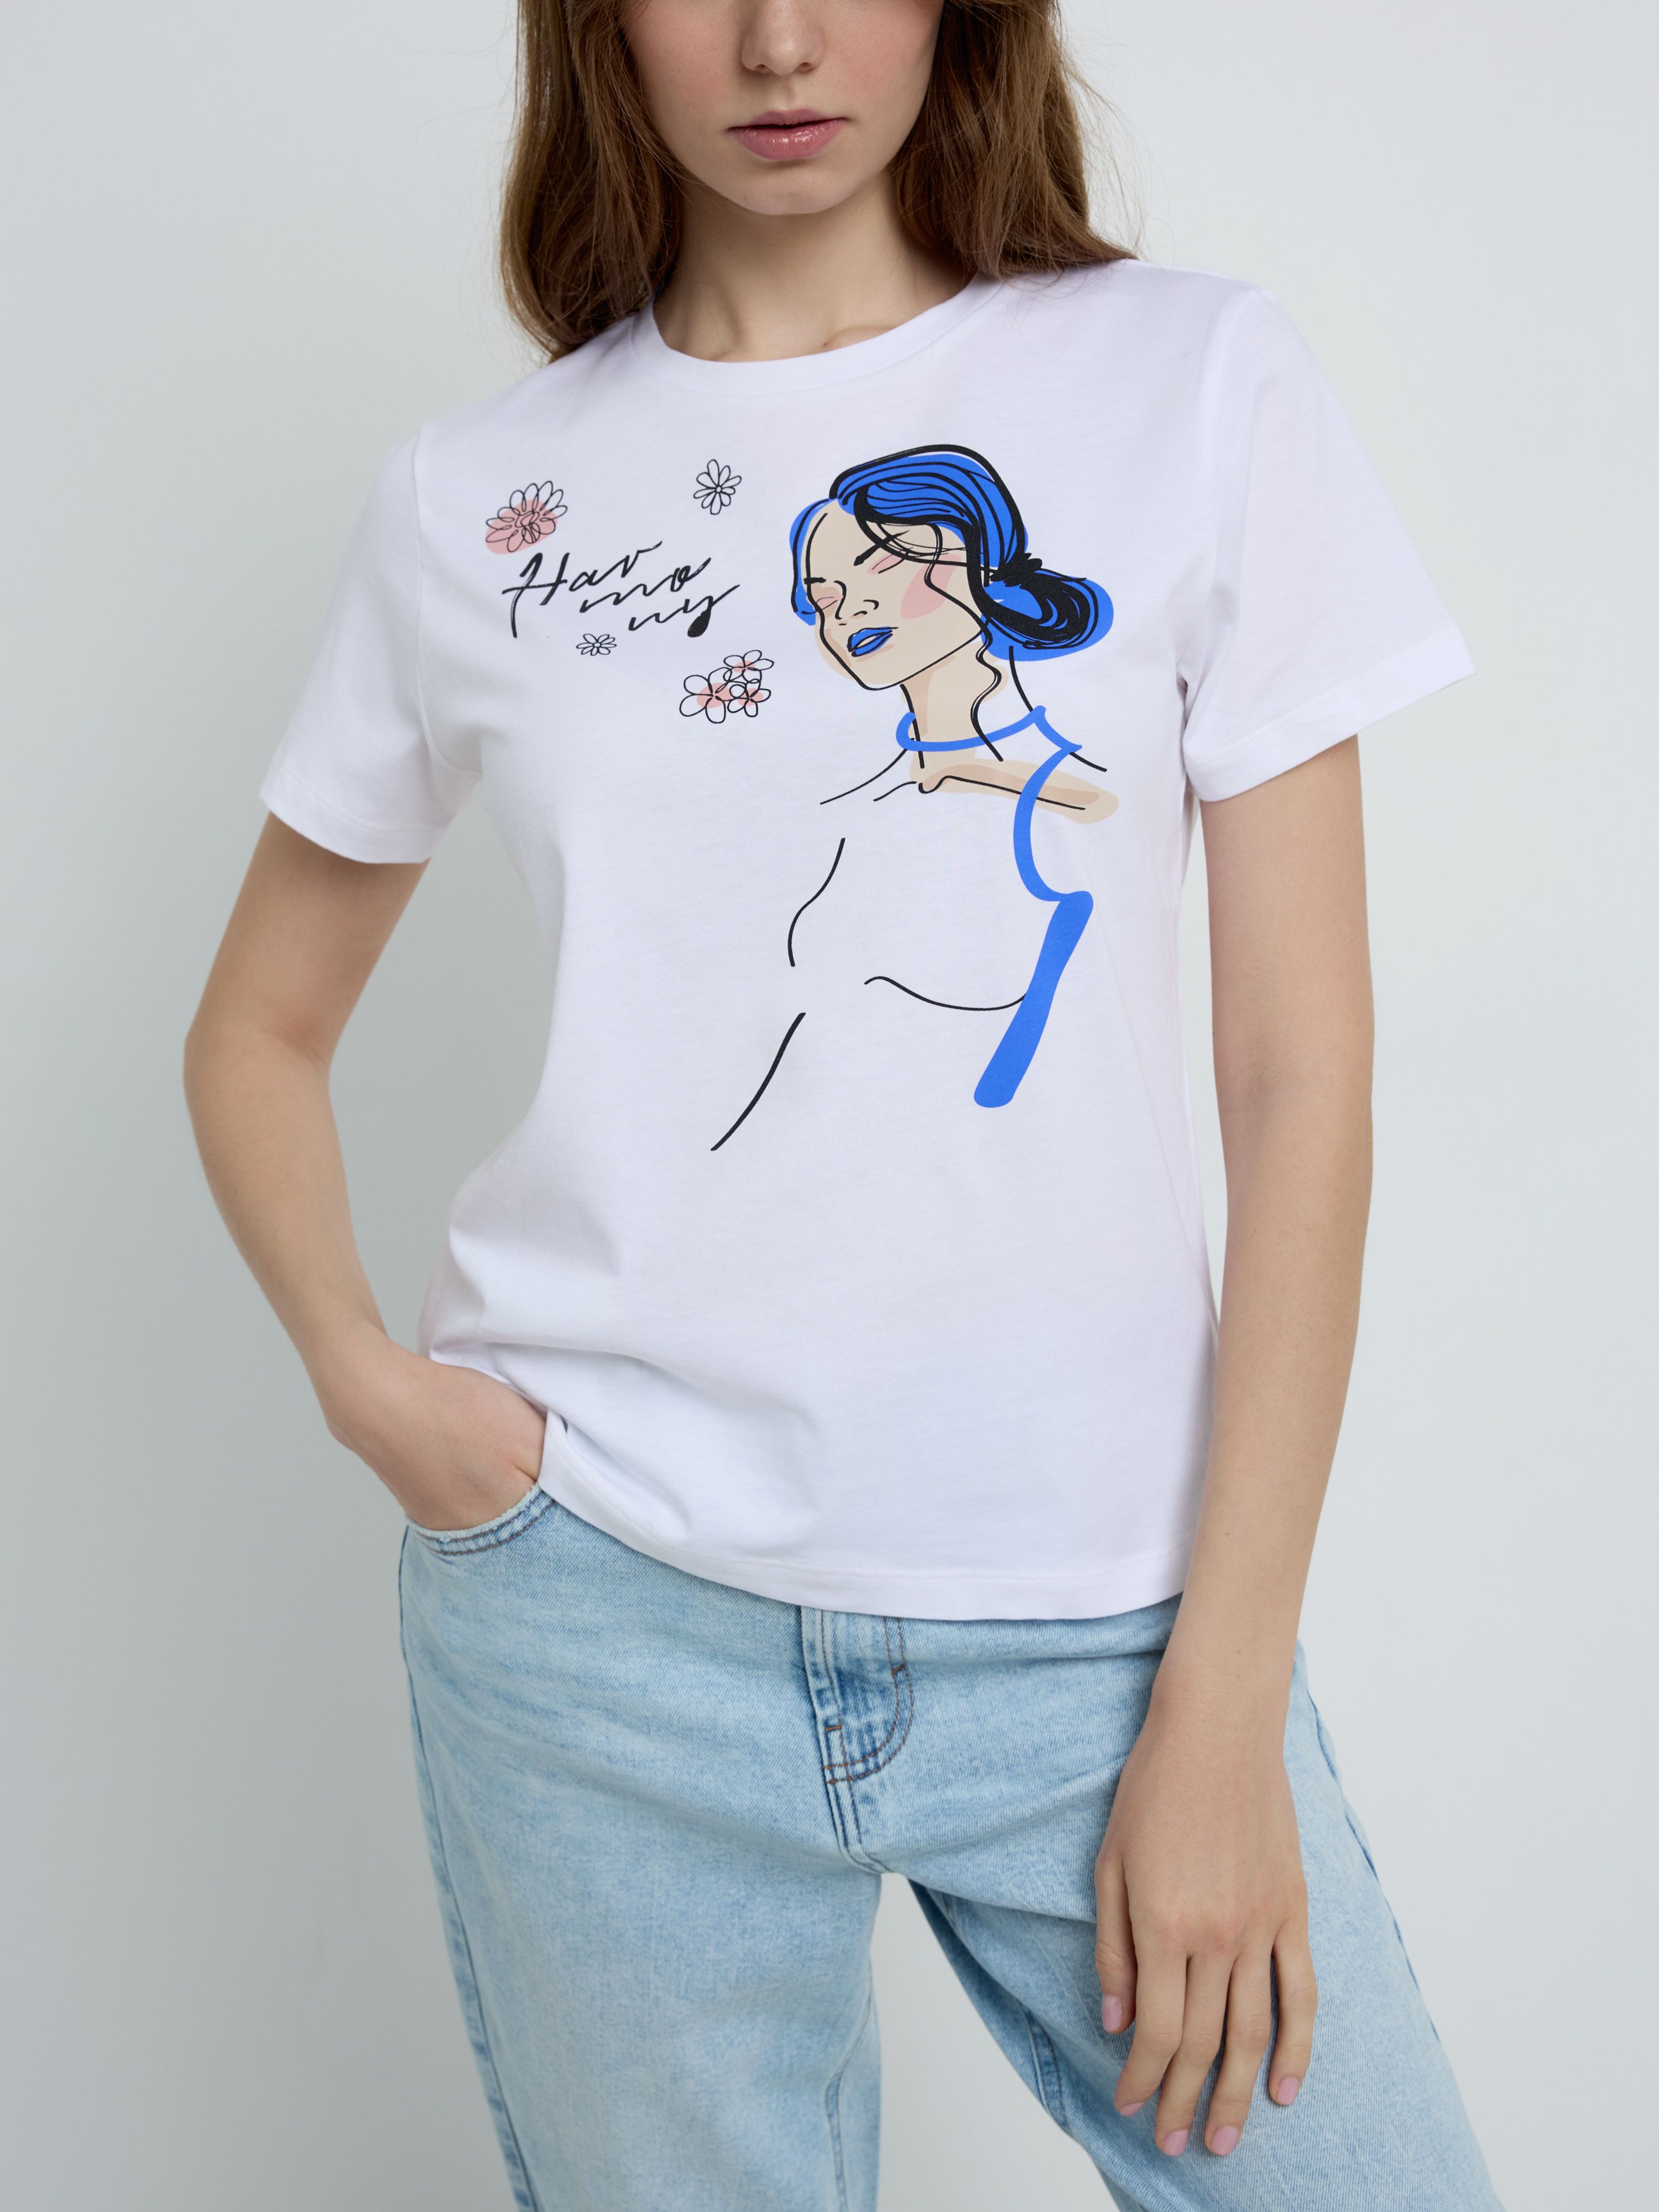 Базовая футболка с рисунком «Individuality» LD 2233 Conte ⭐️, цвет white, размер 170-100/xl - фото 1